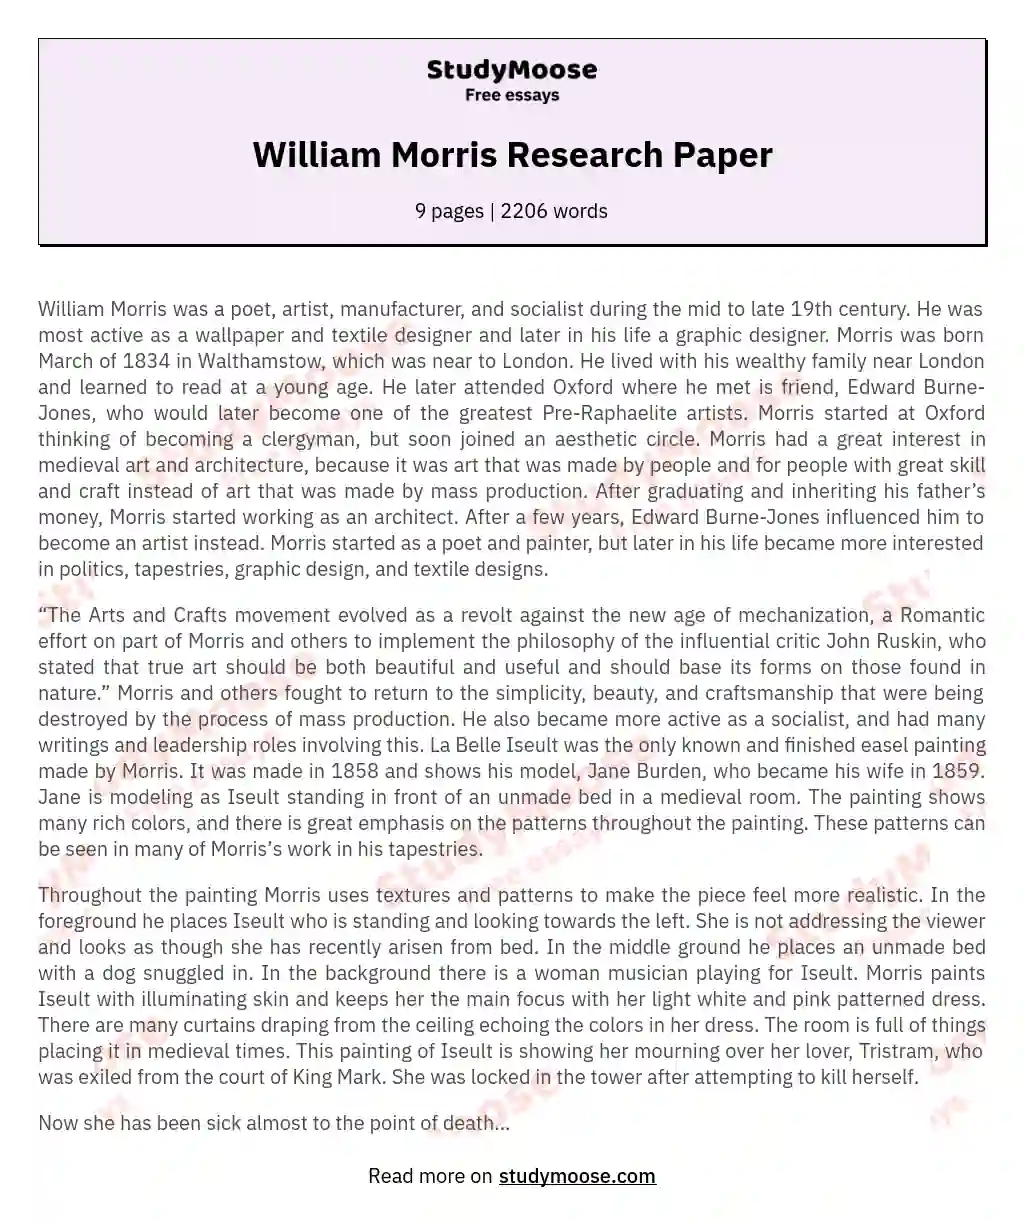 William Morris Research Paper essay